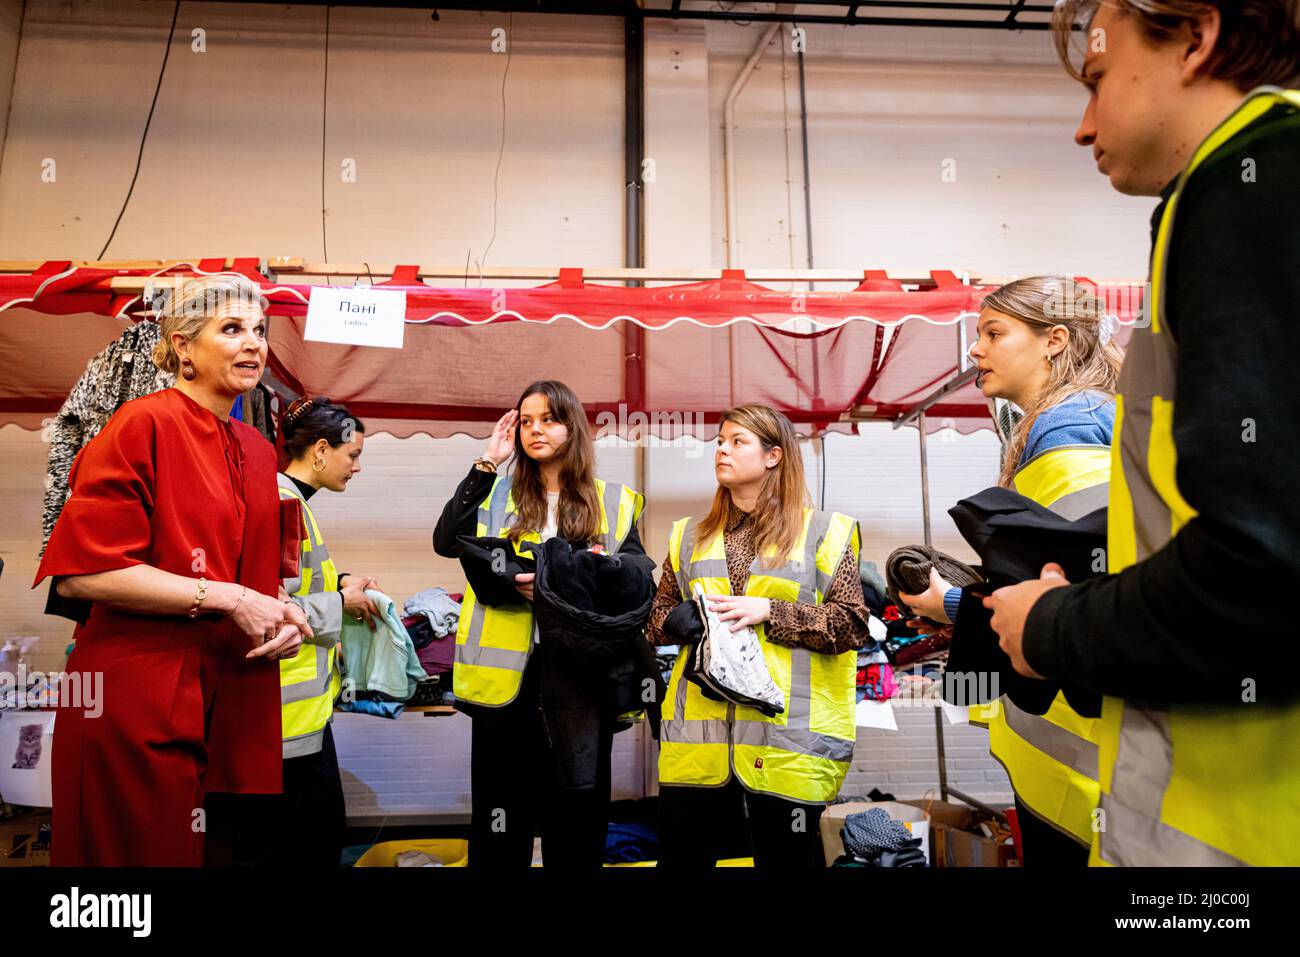 RIJSWIJK - Koningin Maxima opent bij een aanmeldpunt voor Oekraiense vluchtelingen in de Broodfabriek in Rijswijk een onlineplatform voor deze vluchtelingen. Ook sprak ze met vluchtelingen en werd ze rondgeleid op het aanmeldpunt. ANP POOL PATRICK VAN KATWIJK Stock Photo